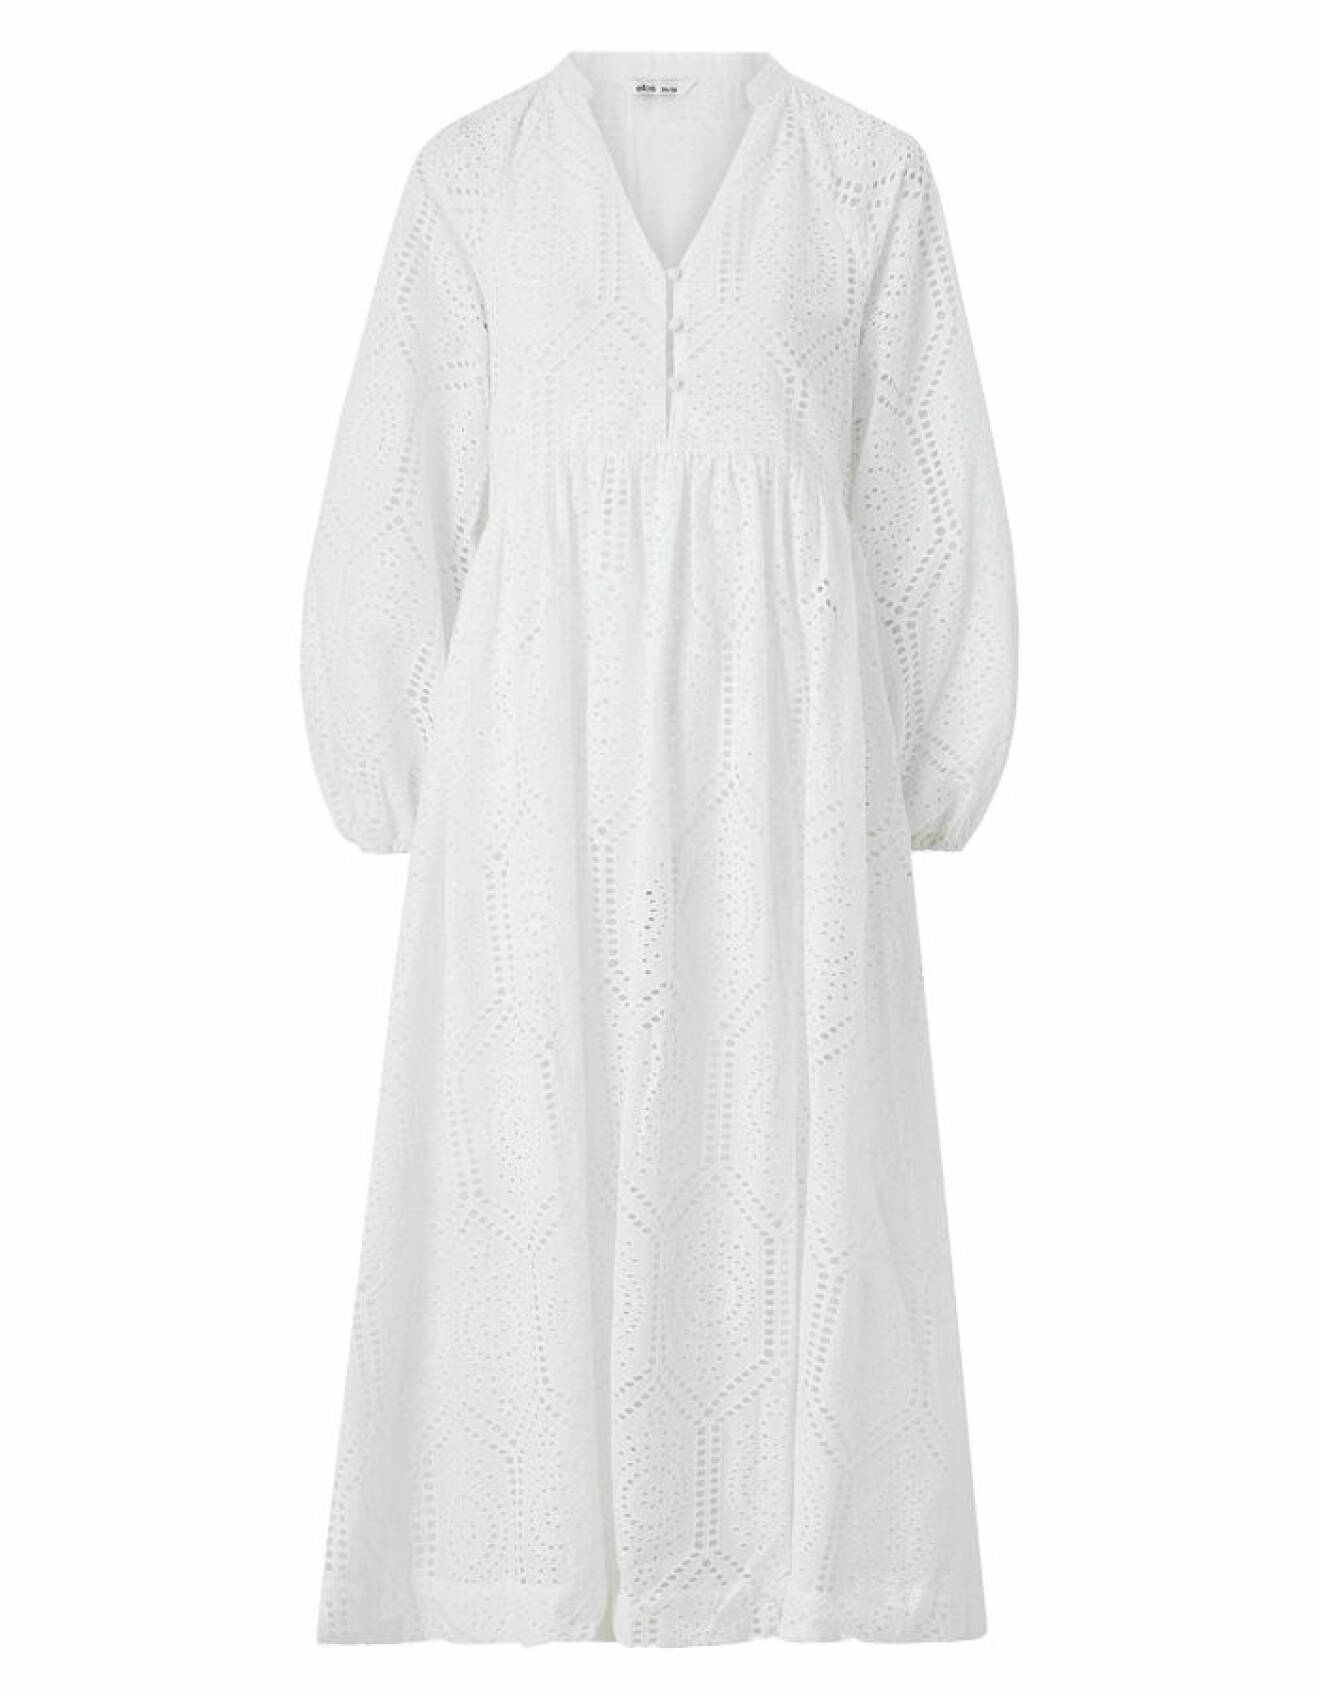 modenyheter dam till jobb och fest - vit broderad maxiklänning från Ellos Collection